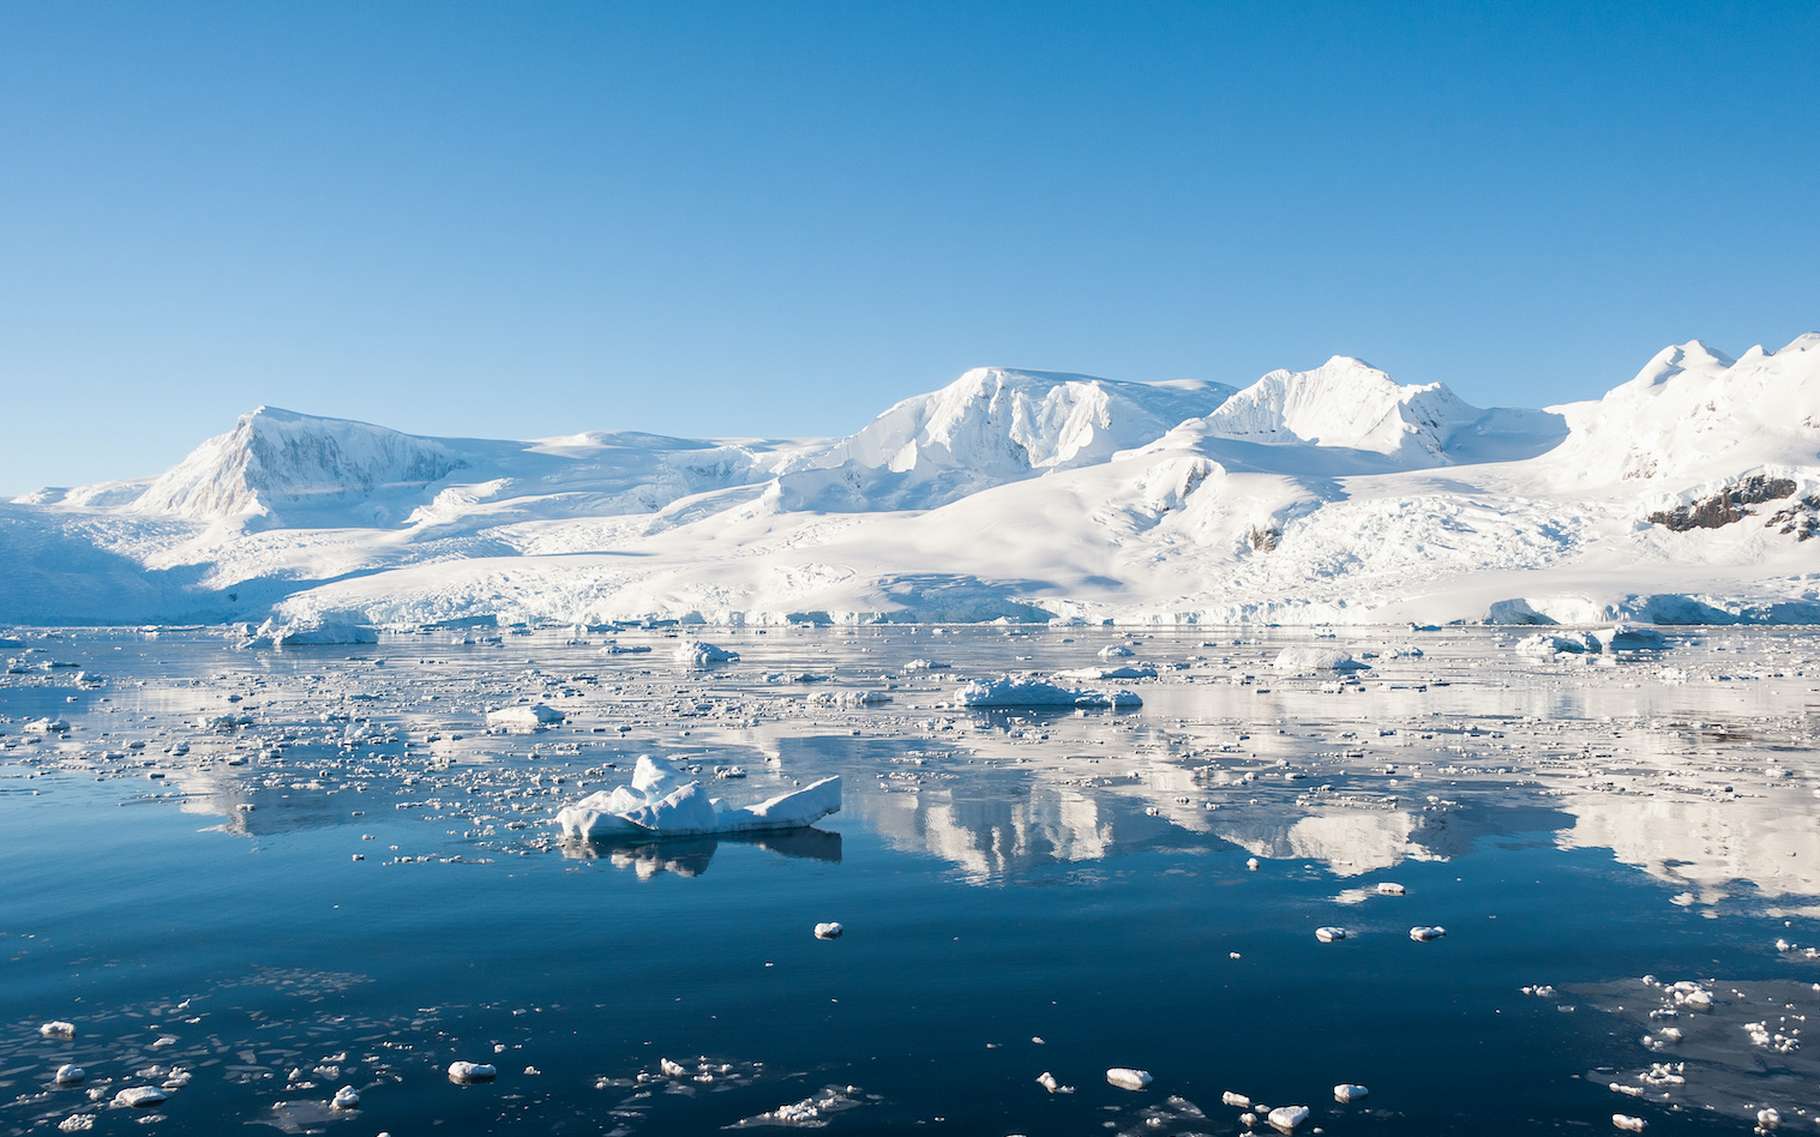 Des chercheurs ont étudié les anciennes plages de l’Antarctique. Pour découvrir que les glaciers de l’ouest du continent fondent aujourd’hui à une vitesse folle. © Asya M Adobe Stock